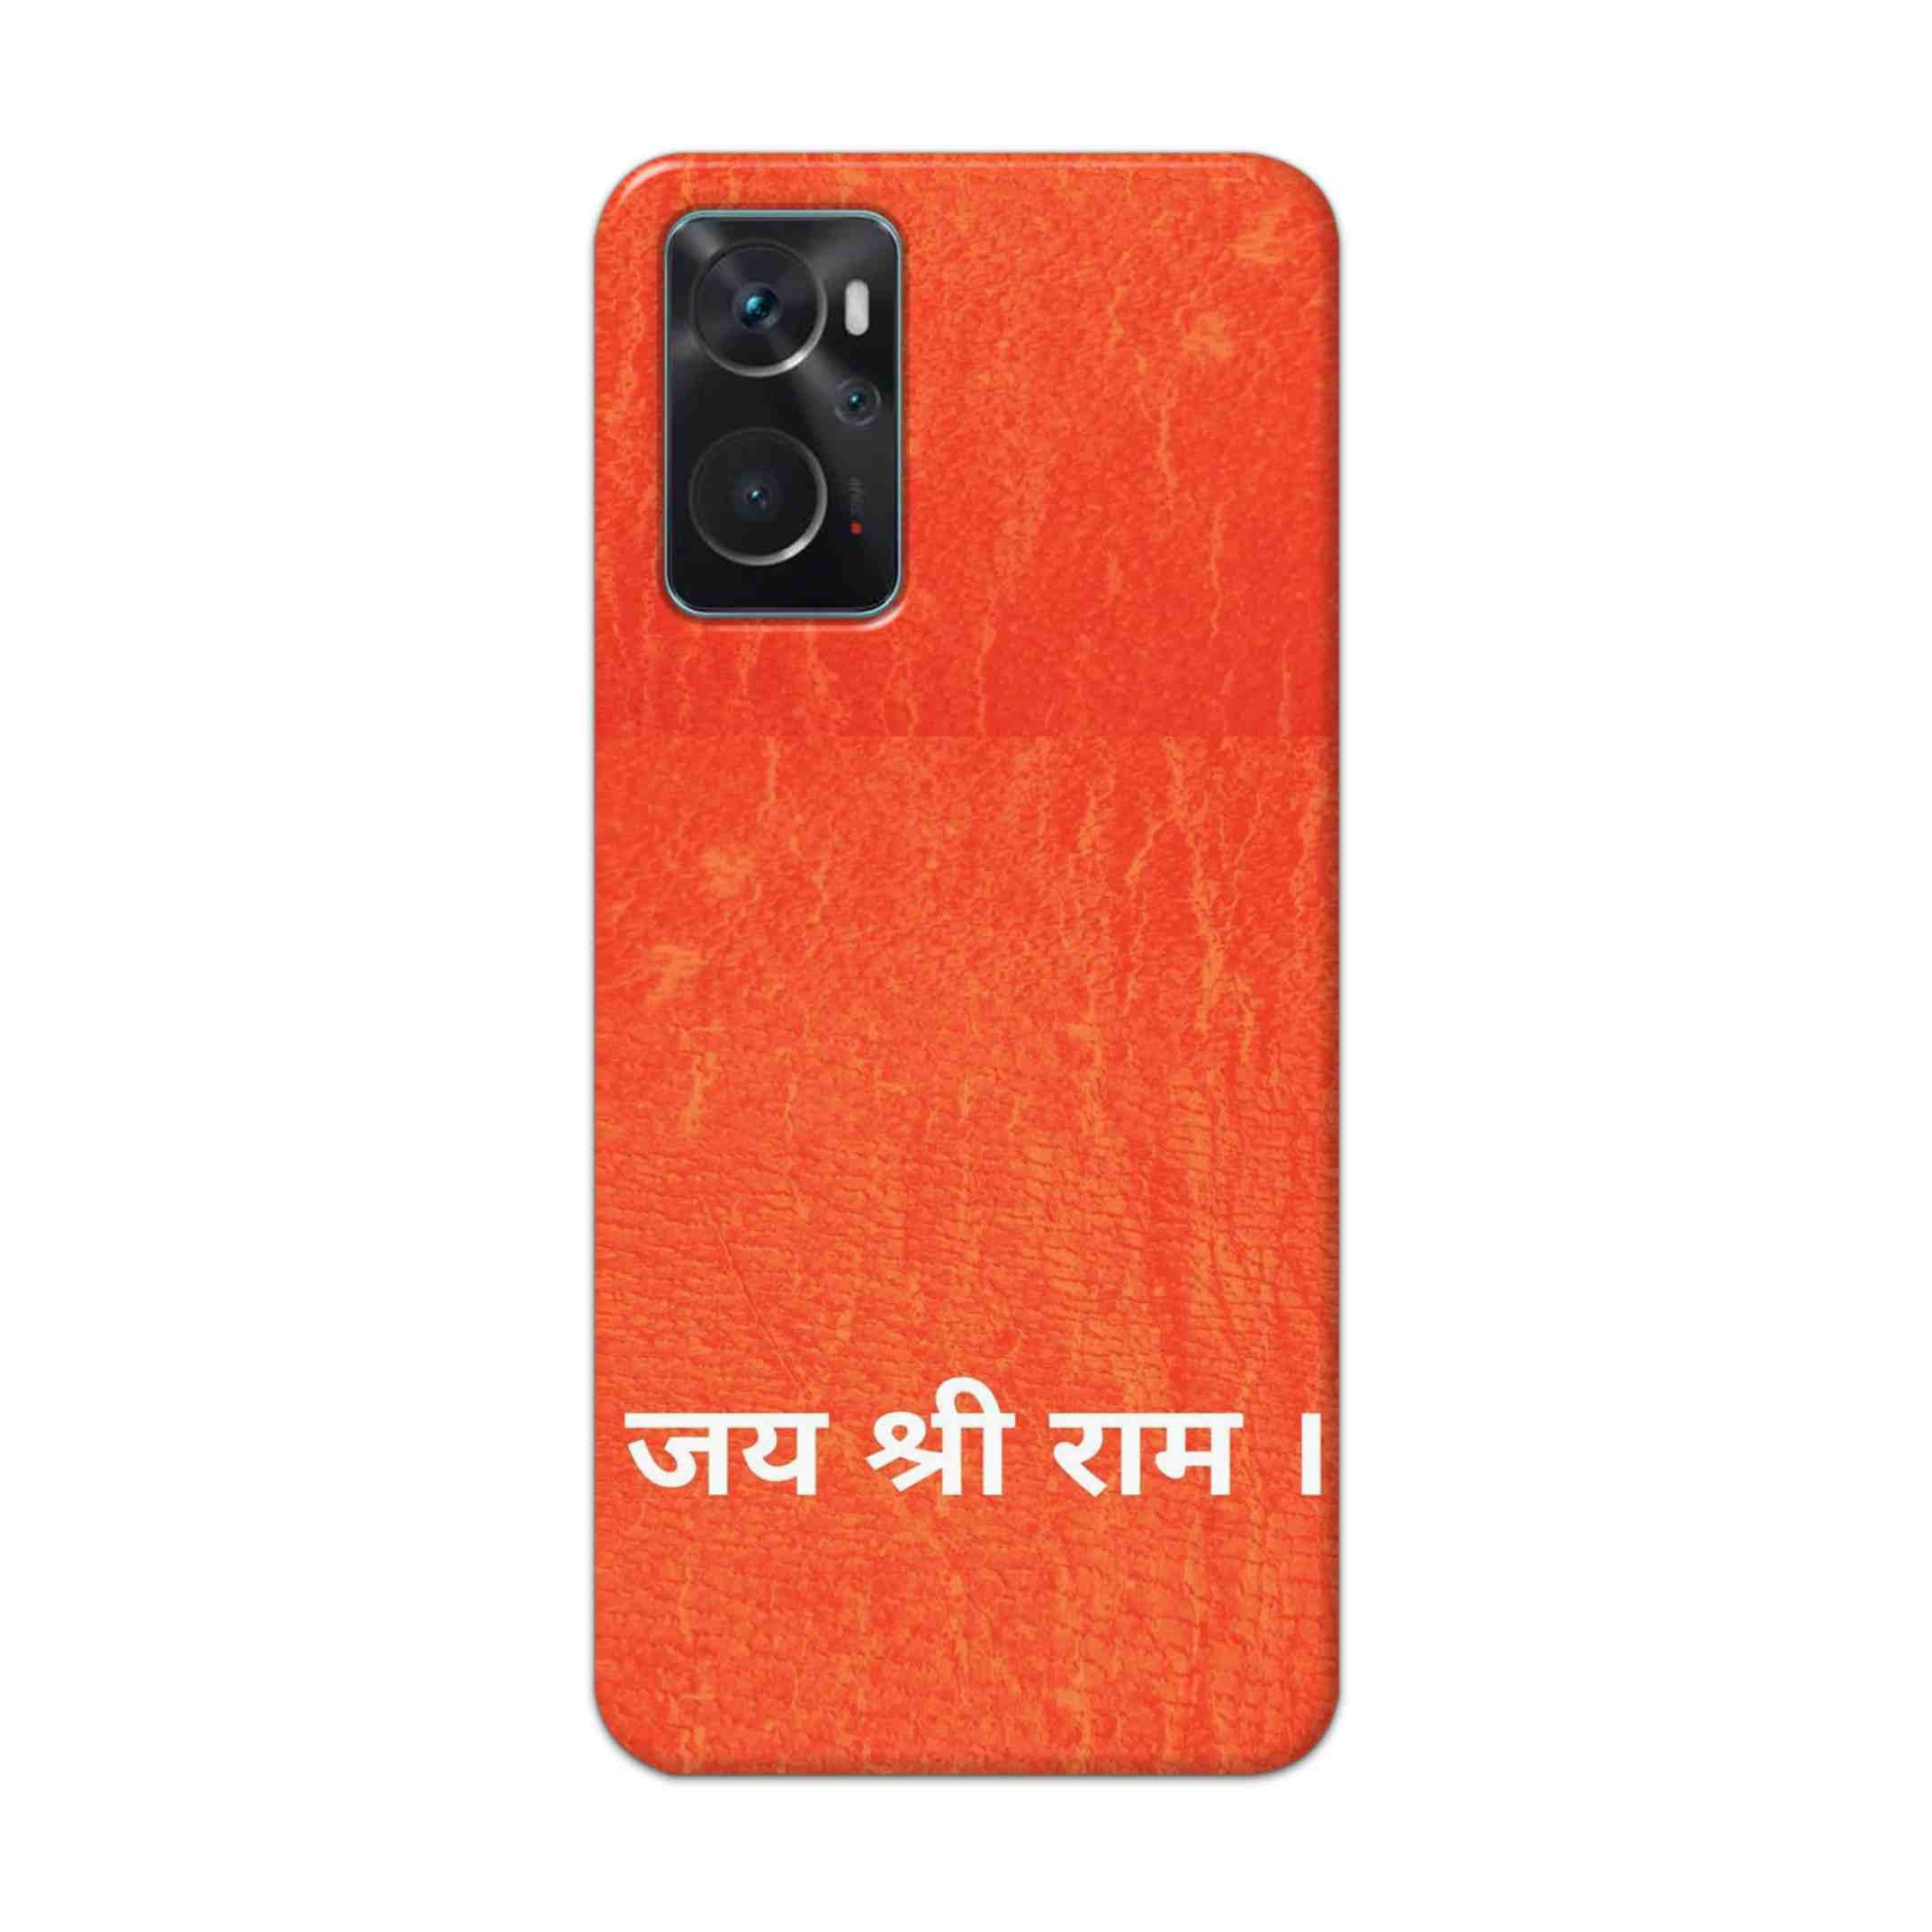 Buy Jai Shree Ram Hard Back Mobile Phone Case Cover For Oppo K10 Online